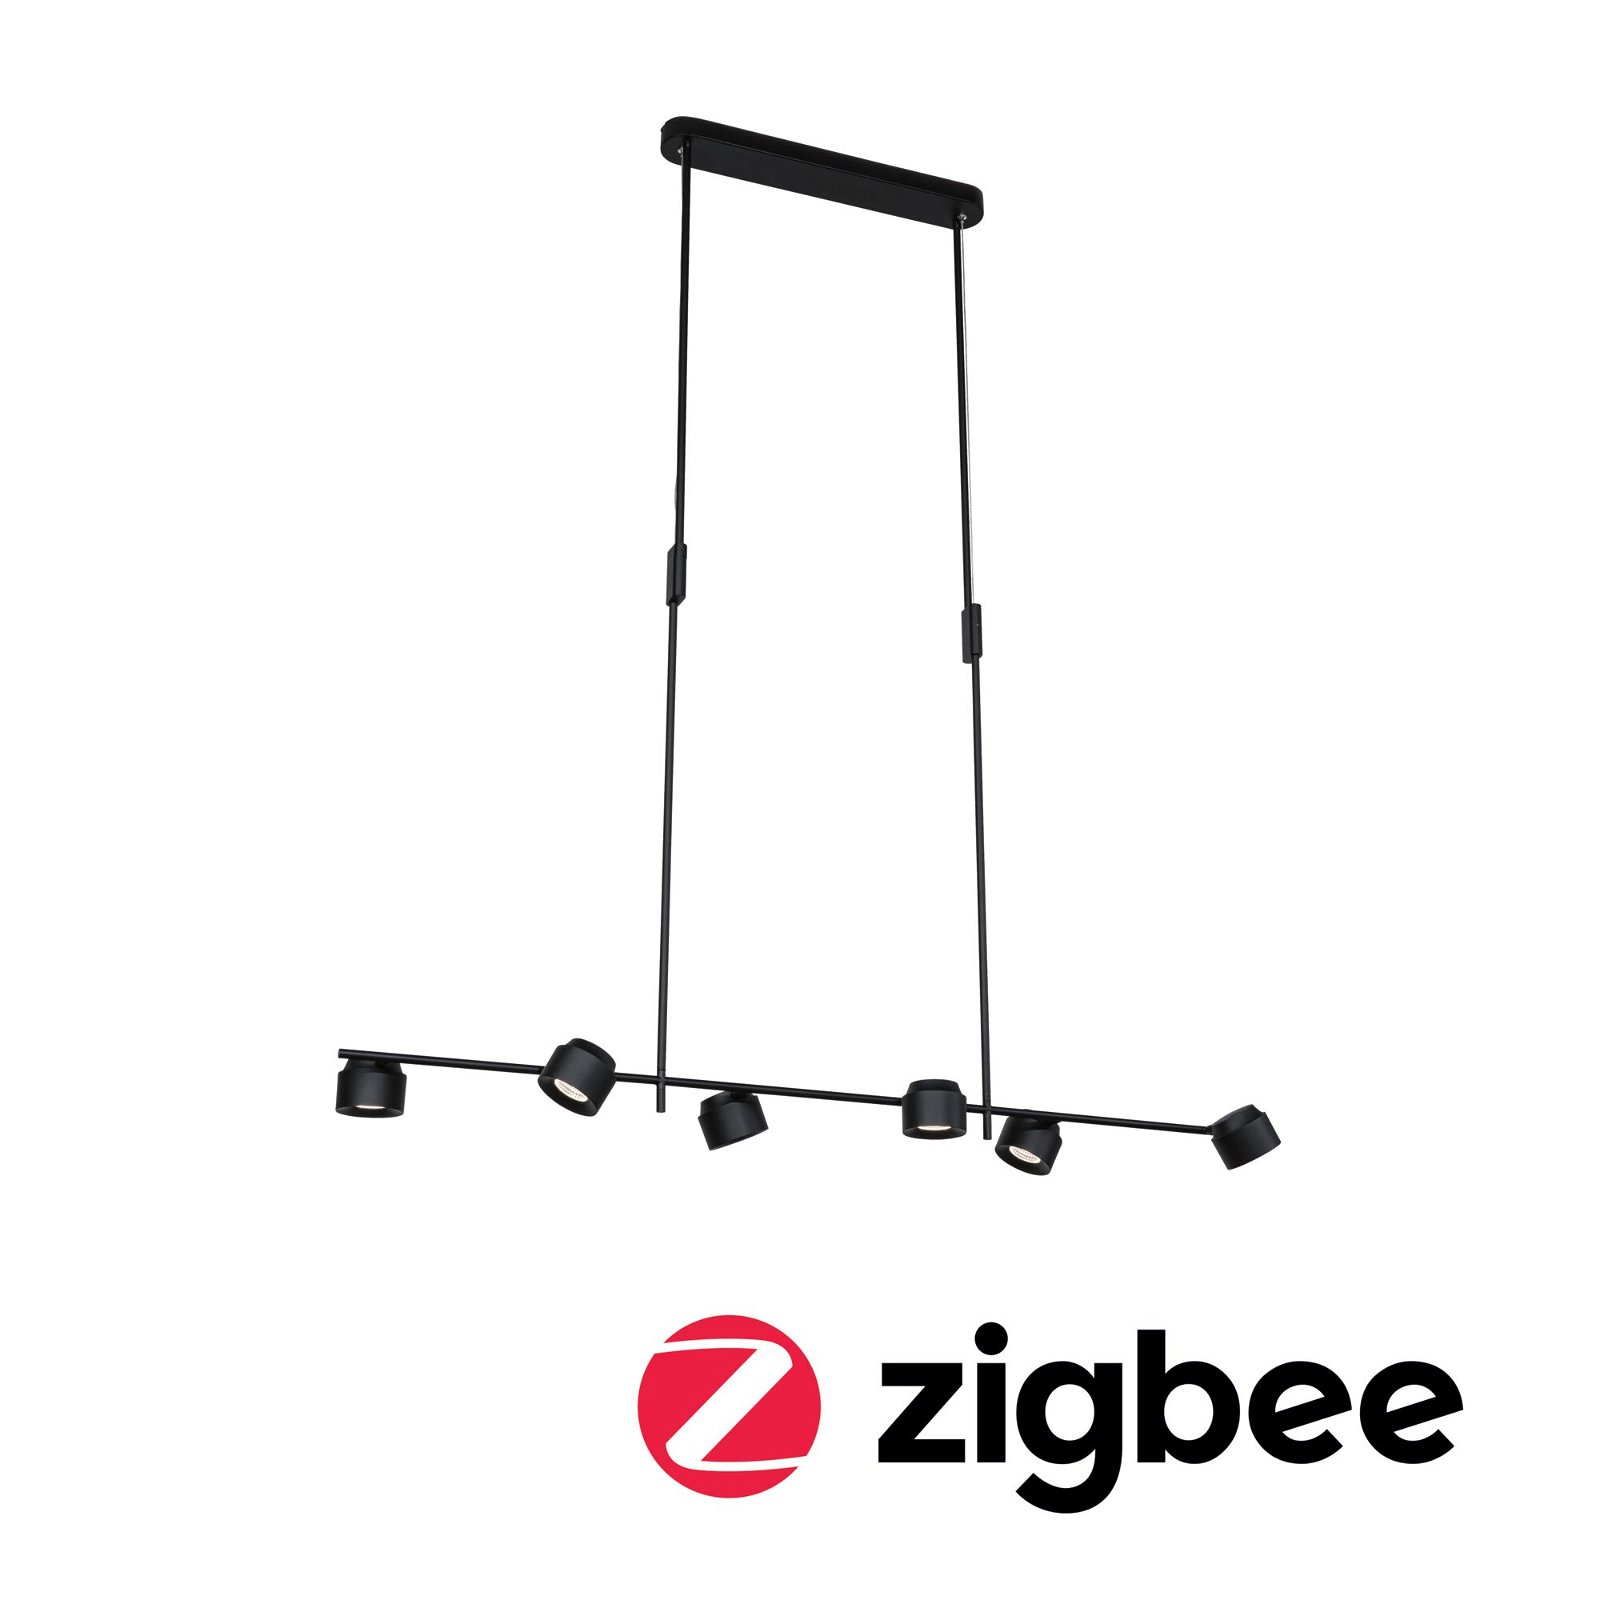 LED-hanglamp Smart Home Zigbee Puric Pane Effect 6x6 / 1x3W Zwart